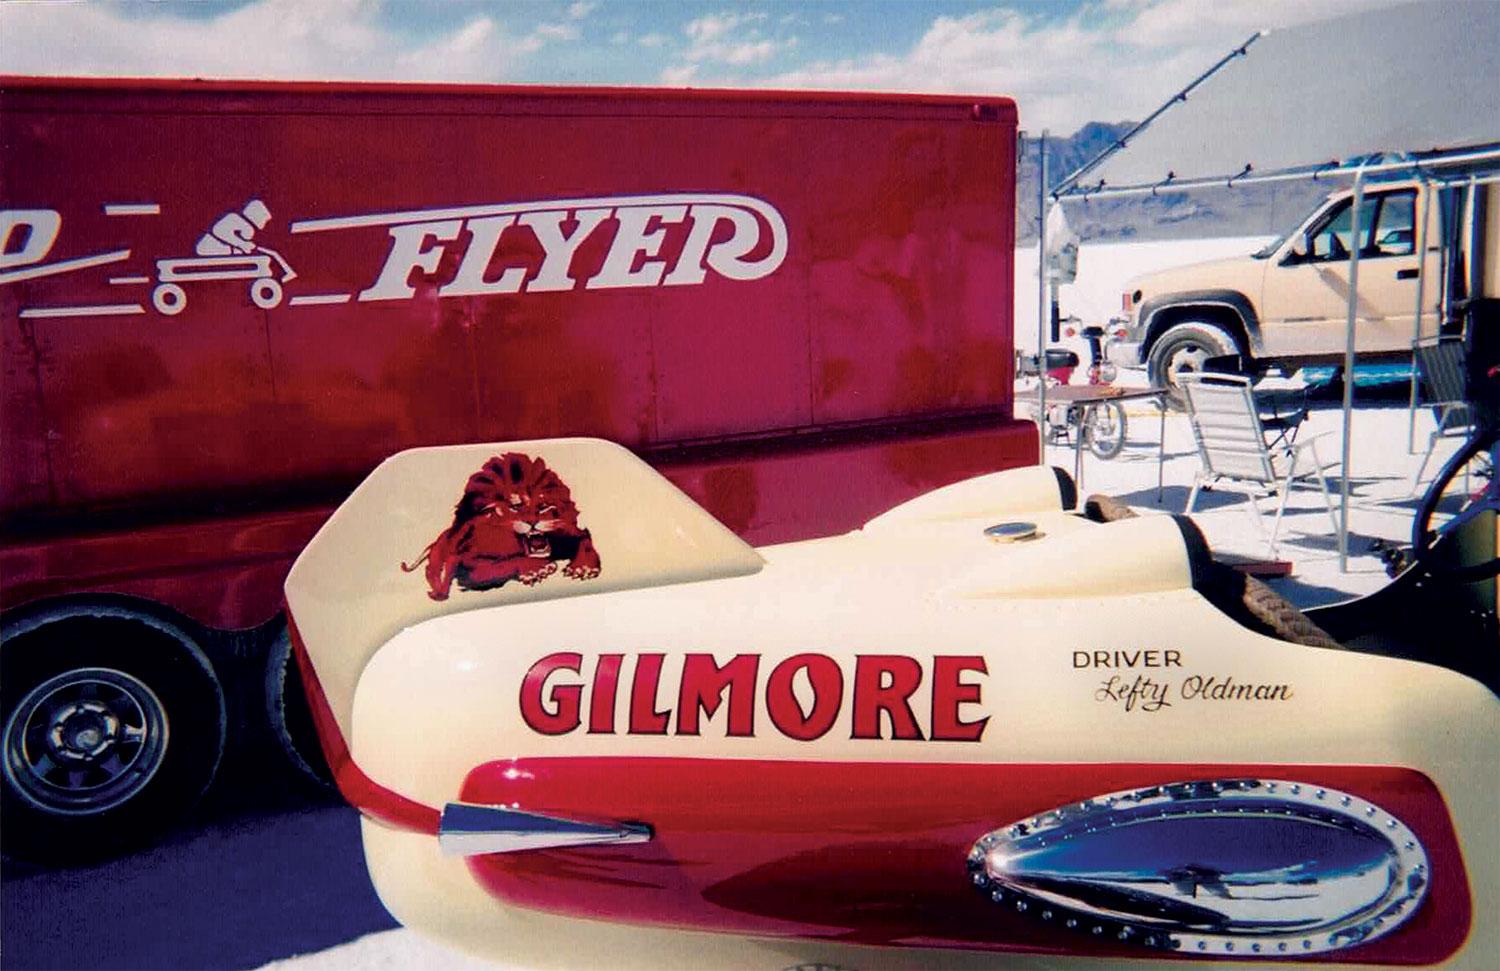 Gilmore Racer. 1937 Hudson Speedster (titled as '31